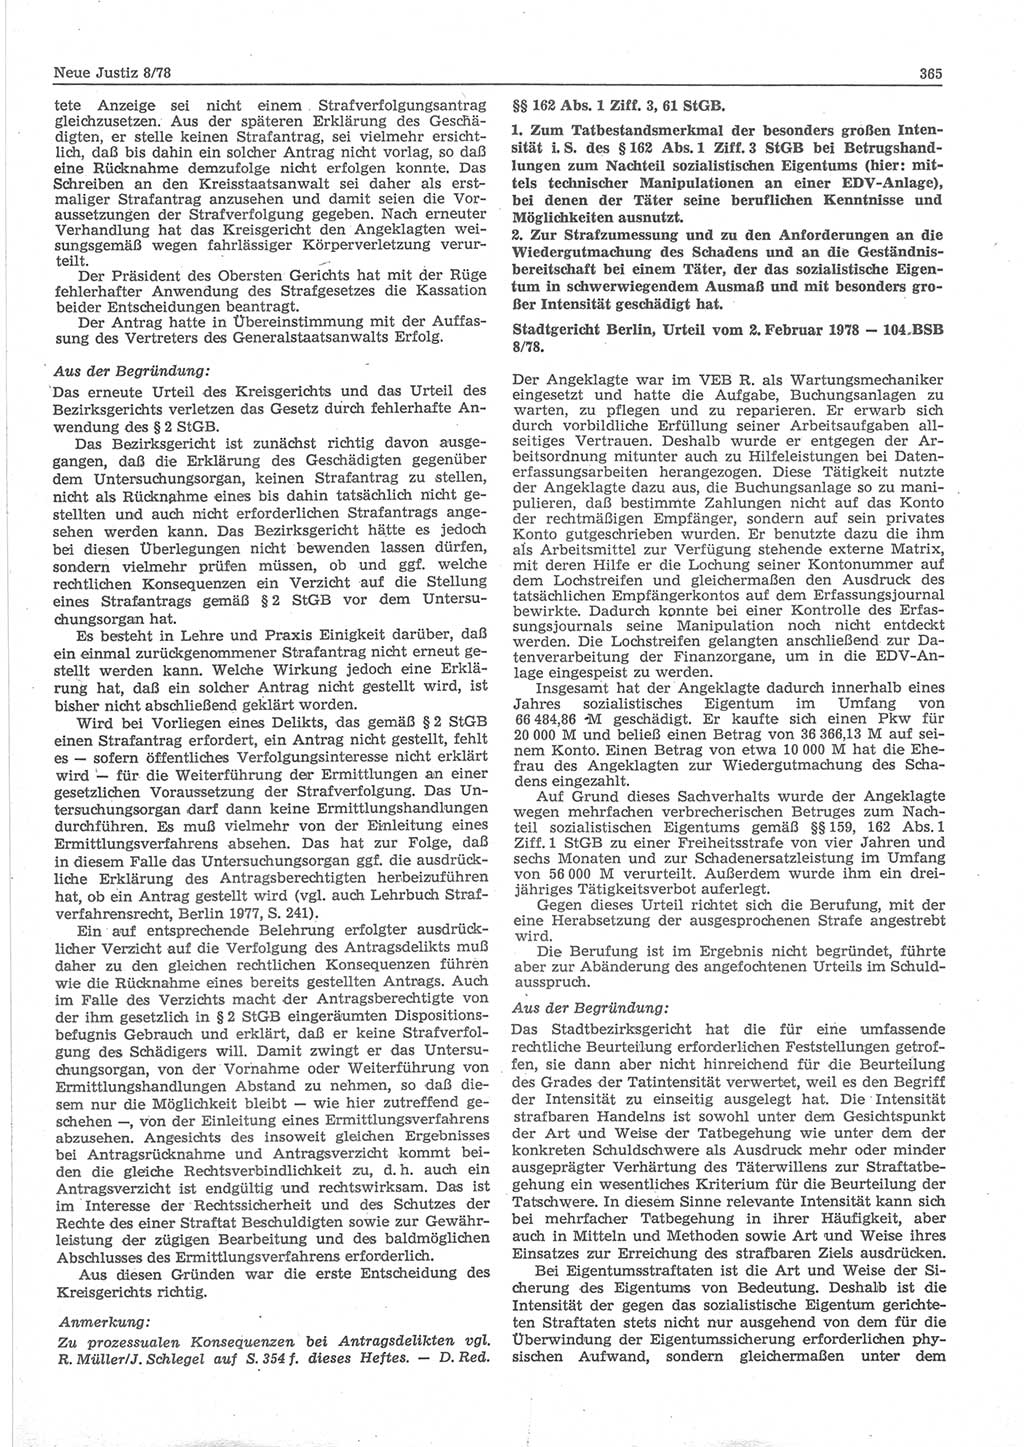 Neue Justiz (NJ), Zeitschrift für sozialistisches Recht und Gesetzlichkeit [Deutsche Demokratische Republik (DDR)], 32. Jahrgang 1978, Seite 365 (NJ DDR 1978, S. 365)